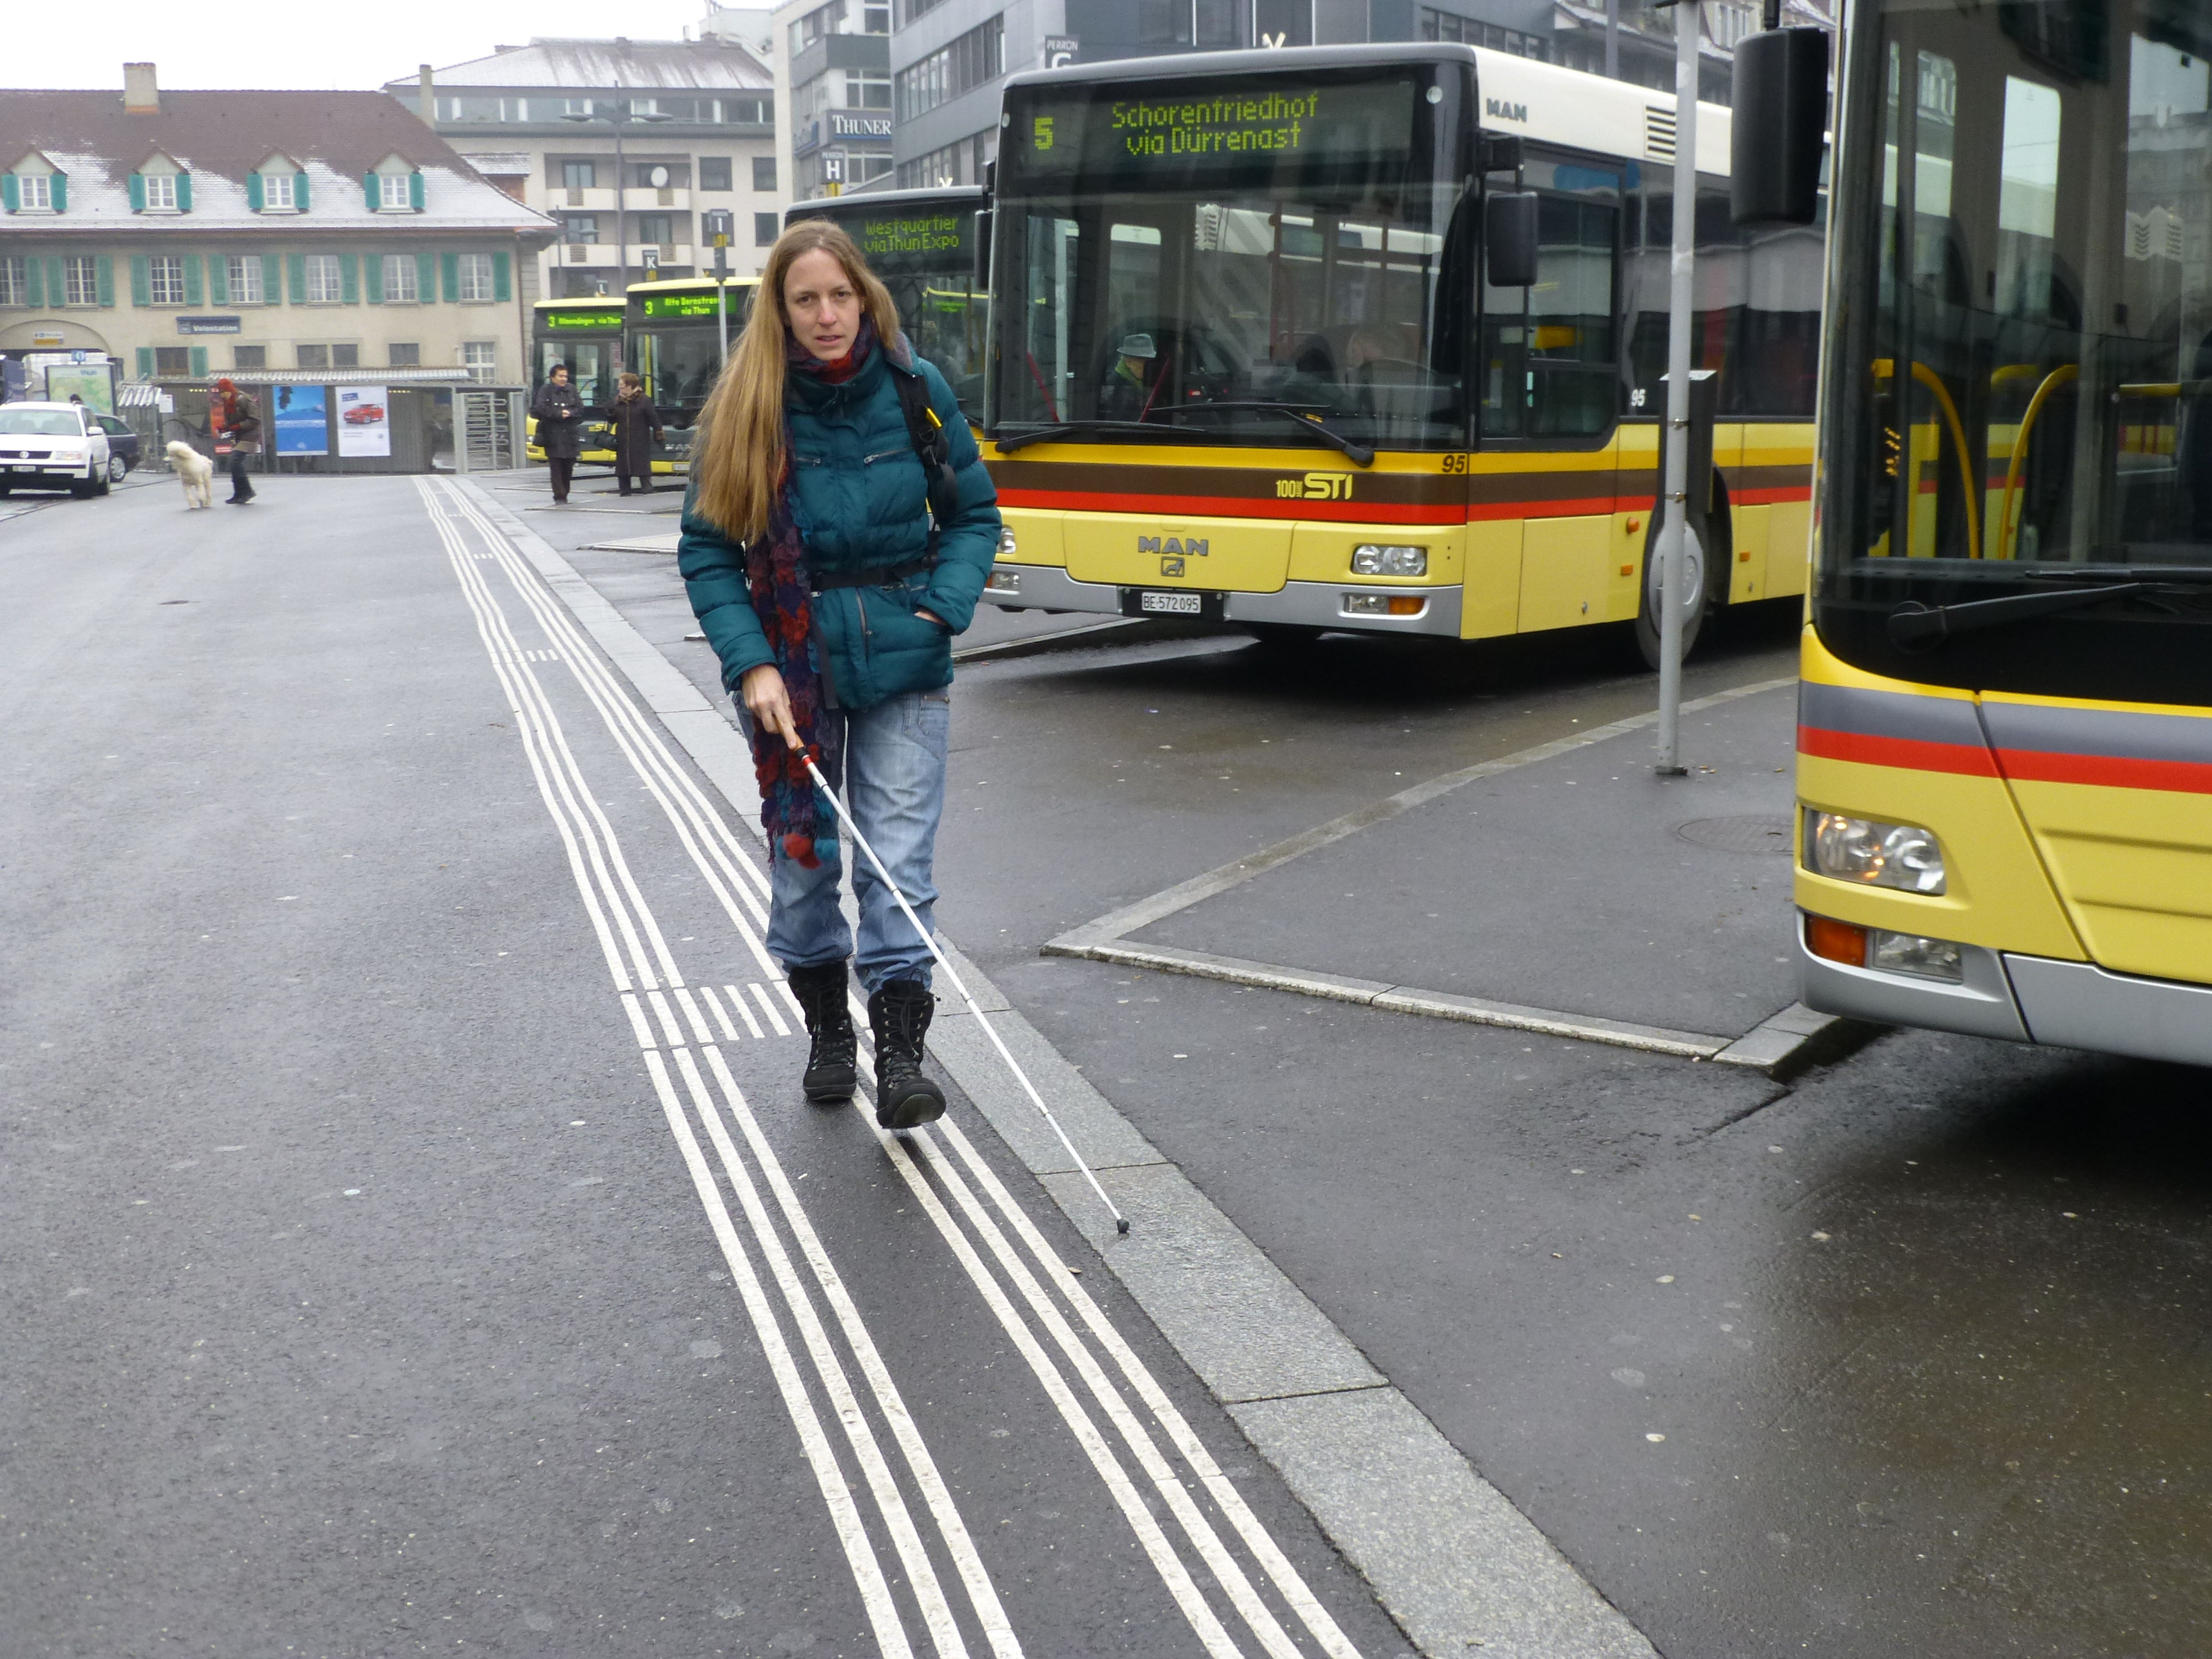 Weisse, erhobene Linien ermglichen ein sicheres Fortbewegen im ffentlichen Raum. Susanne Gasser am Bahnhof in Thun.